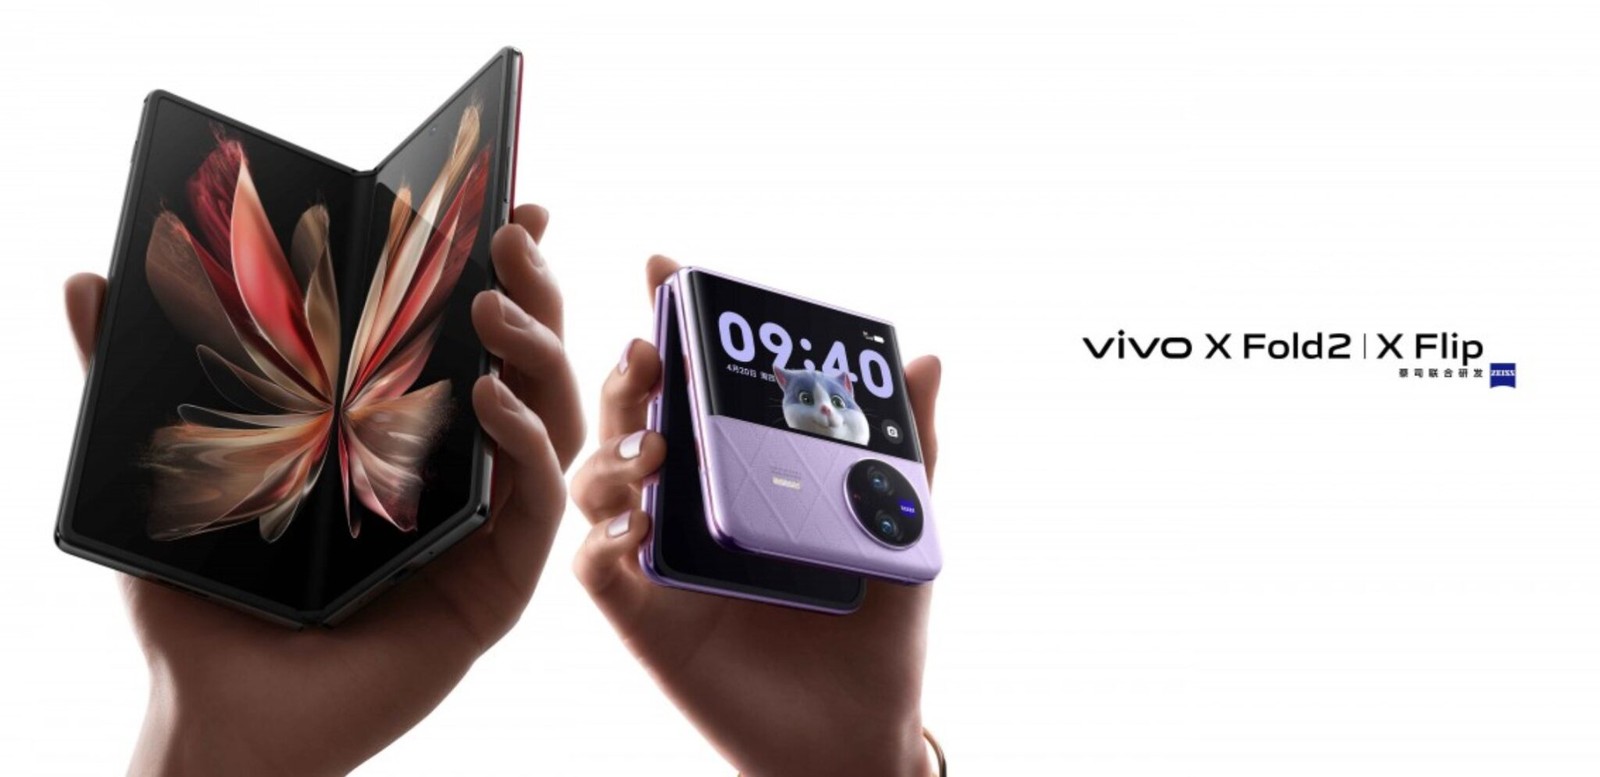 Vivo X Fold 2 i Vivo X Flip oficjalnie. Te składaki mogą powalczyć z nowymi modelami Samsunga